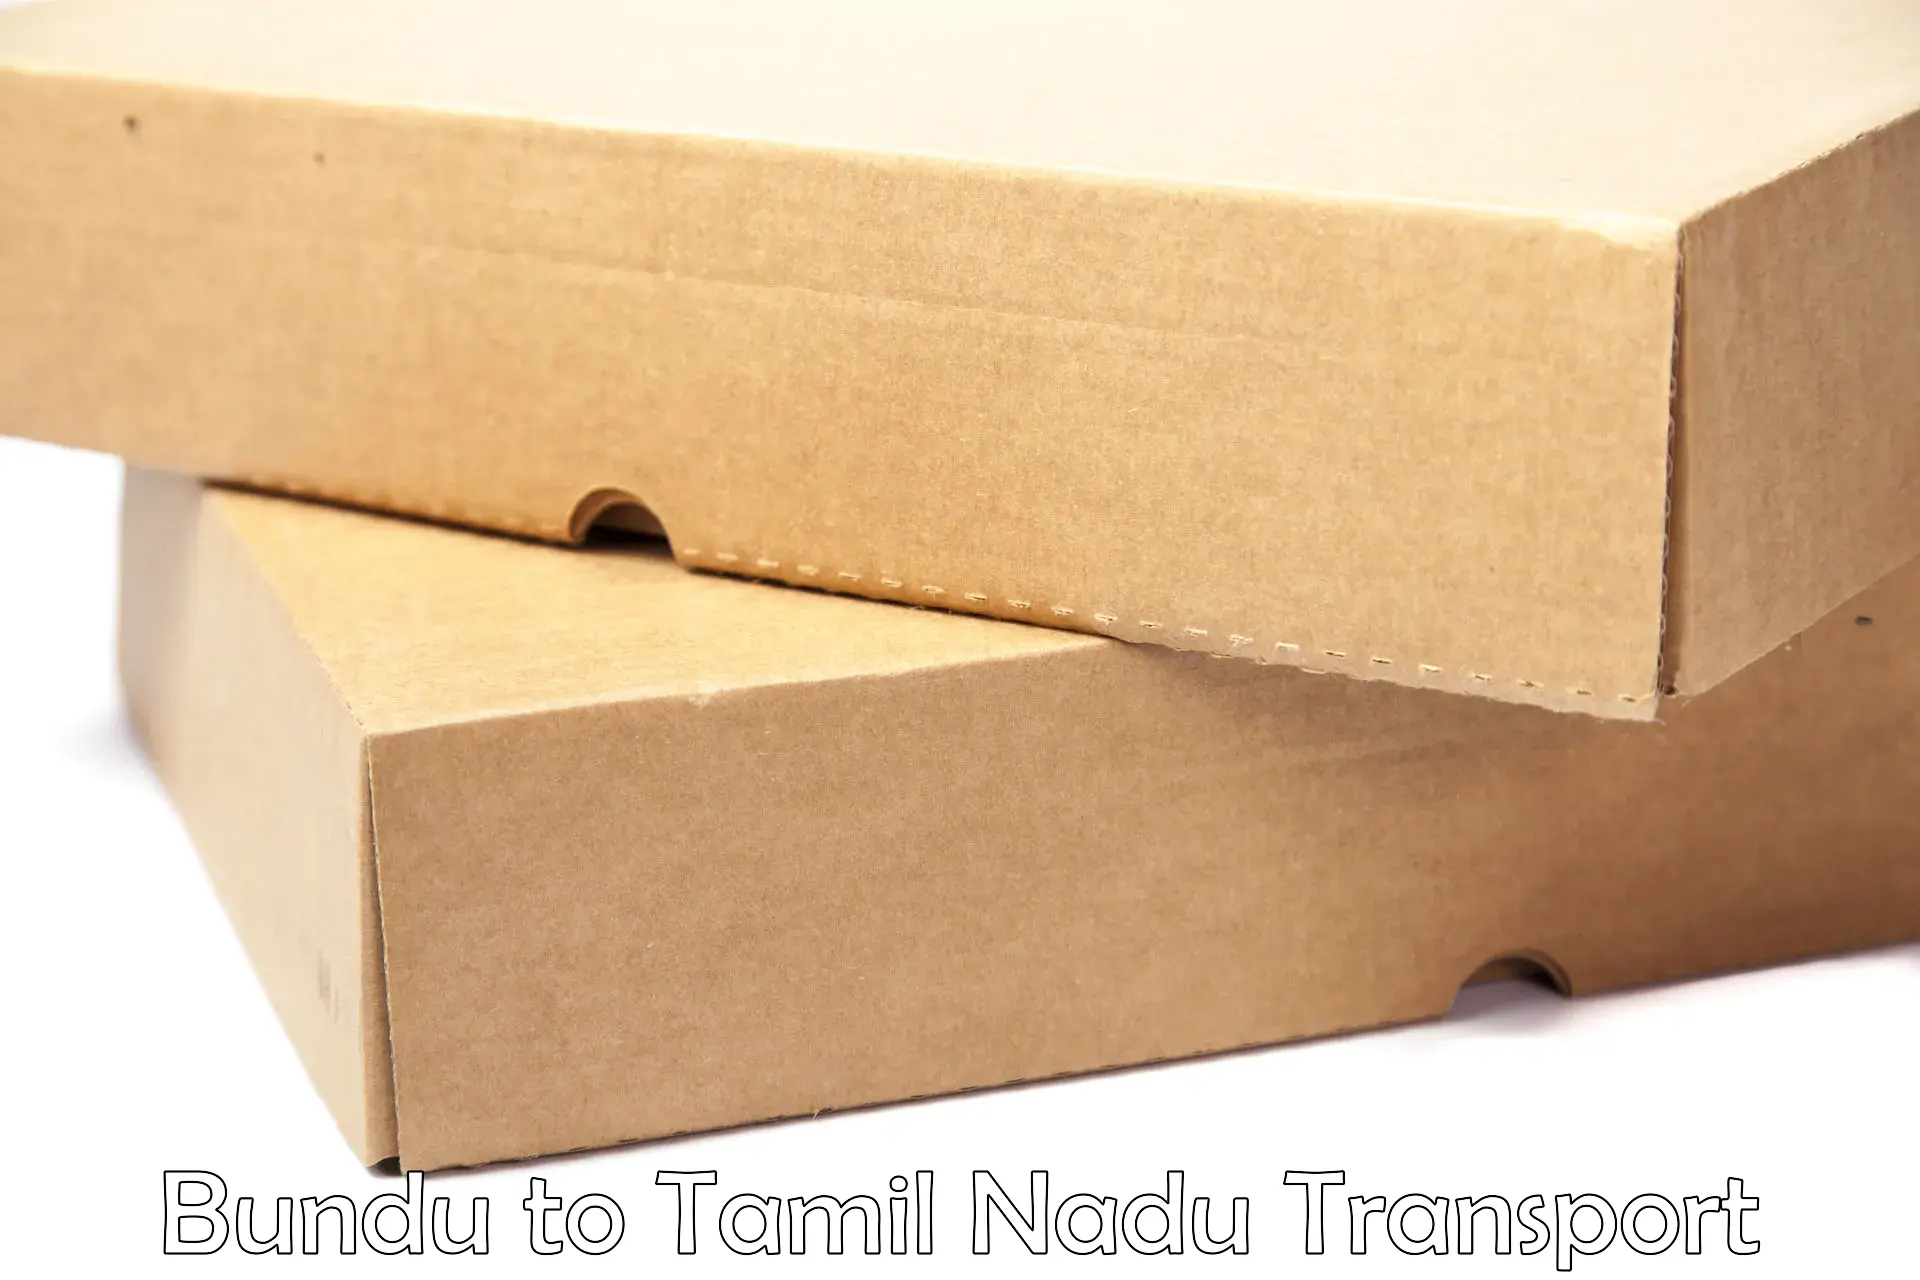 Cargo transport services Bundu to Tiruchendur